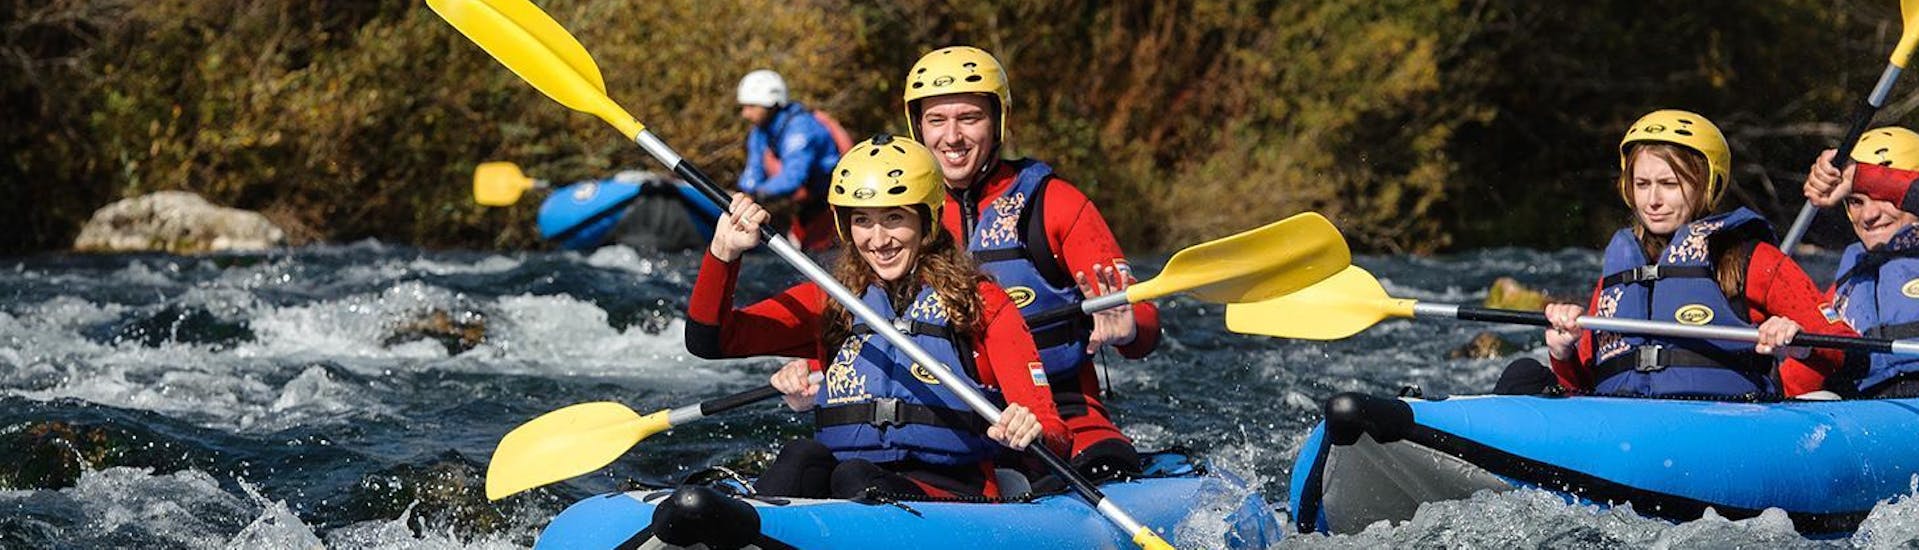 I partecipanti del Safari in canoa sul fiume Cetina con transfer da Split organizzato da Adventure Dalmazia si divertono sul fiume mentre remano attraverso le rapide.